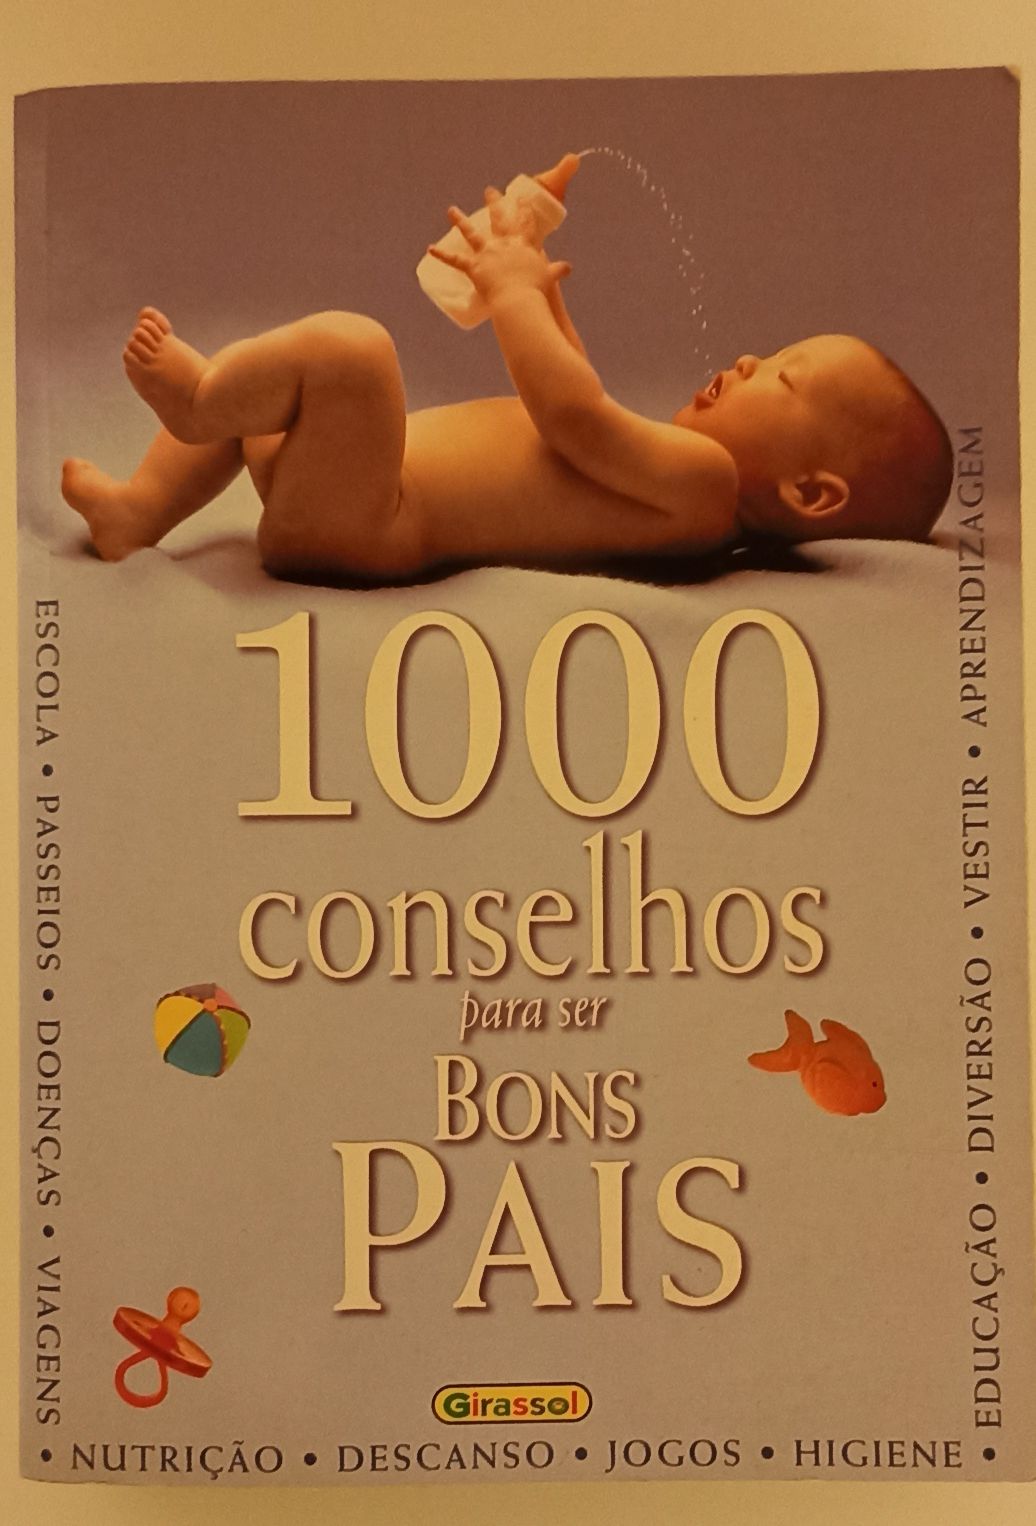 1000 concelhos para ser bons pais